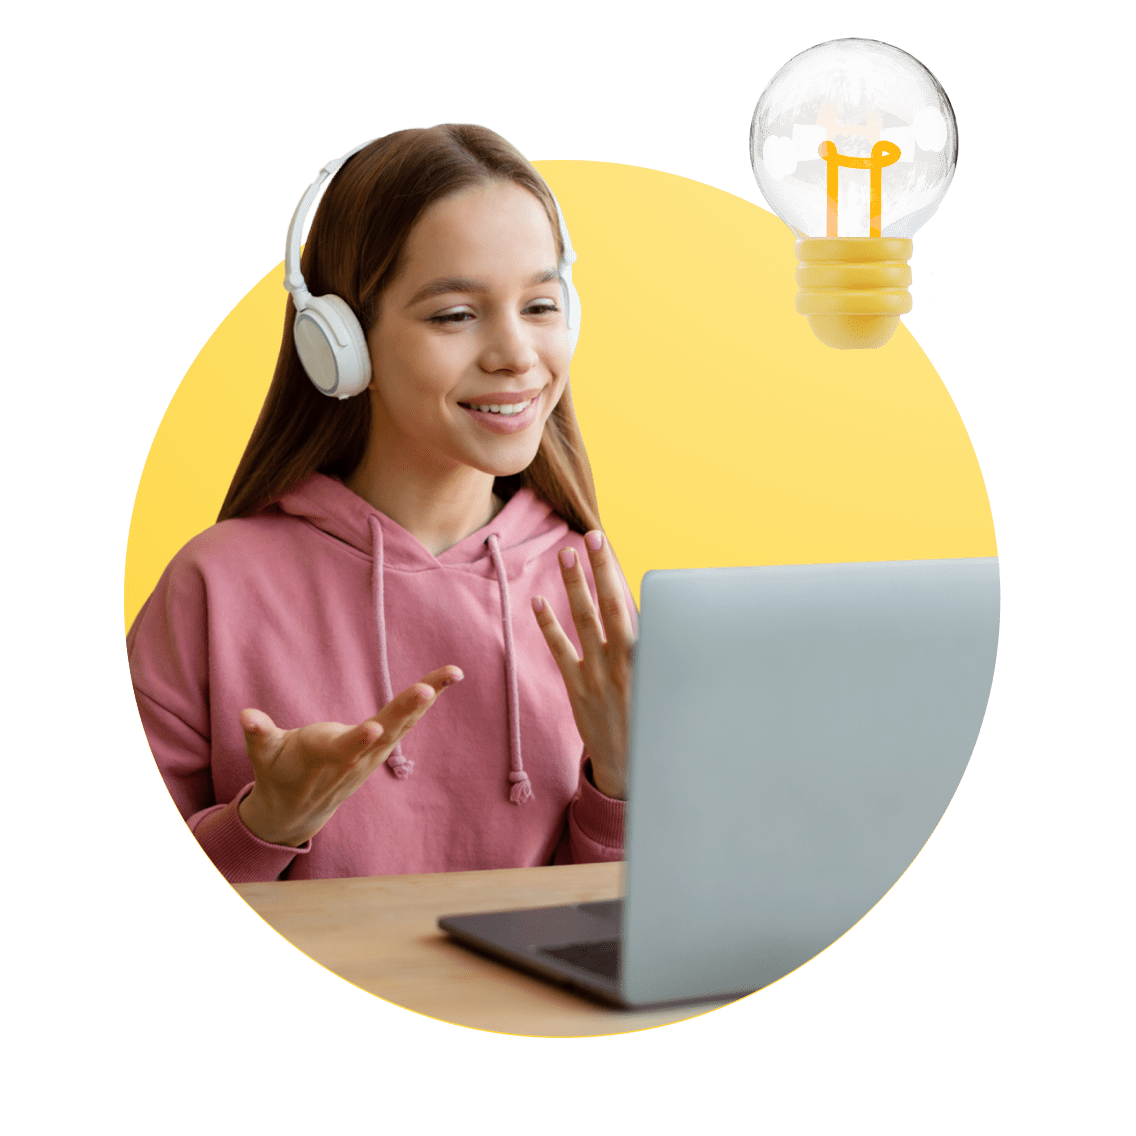 Texas Online Schools image 8 (name 4 Young Girl Desk Headphones Light)